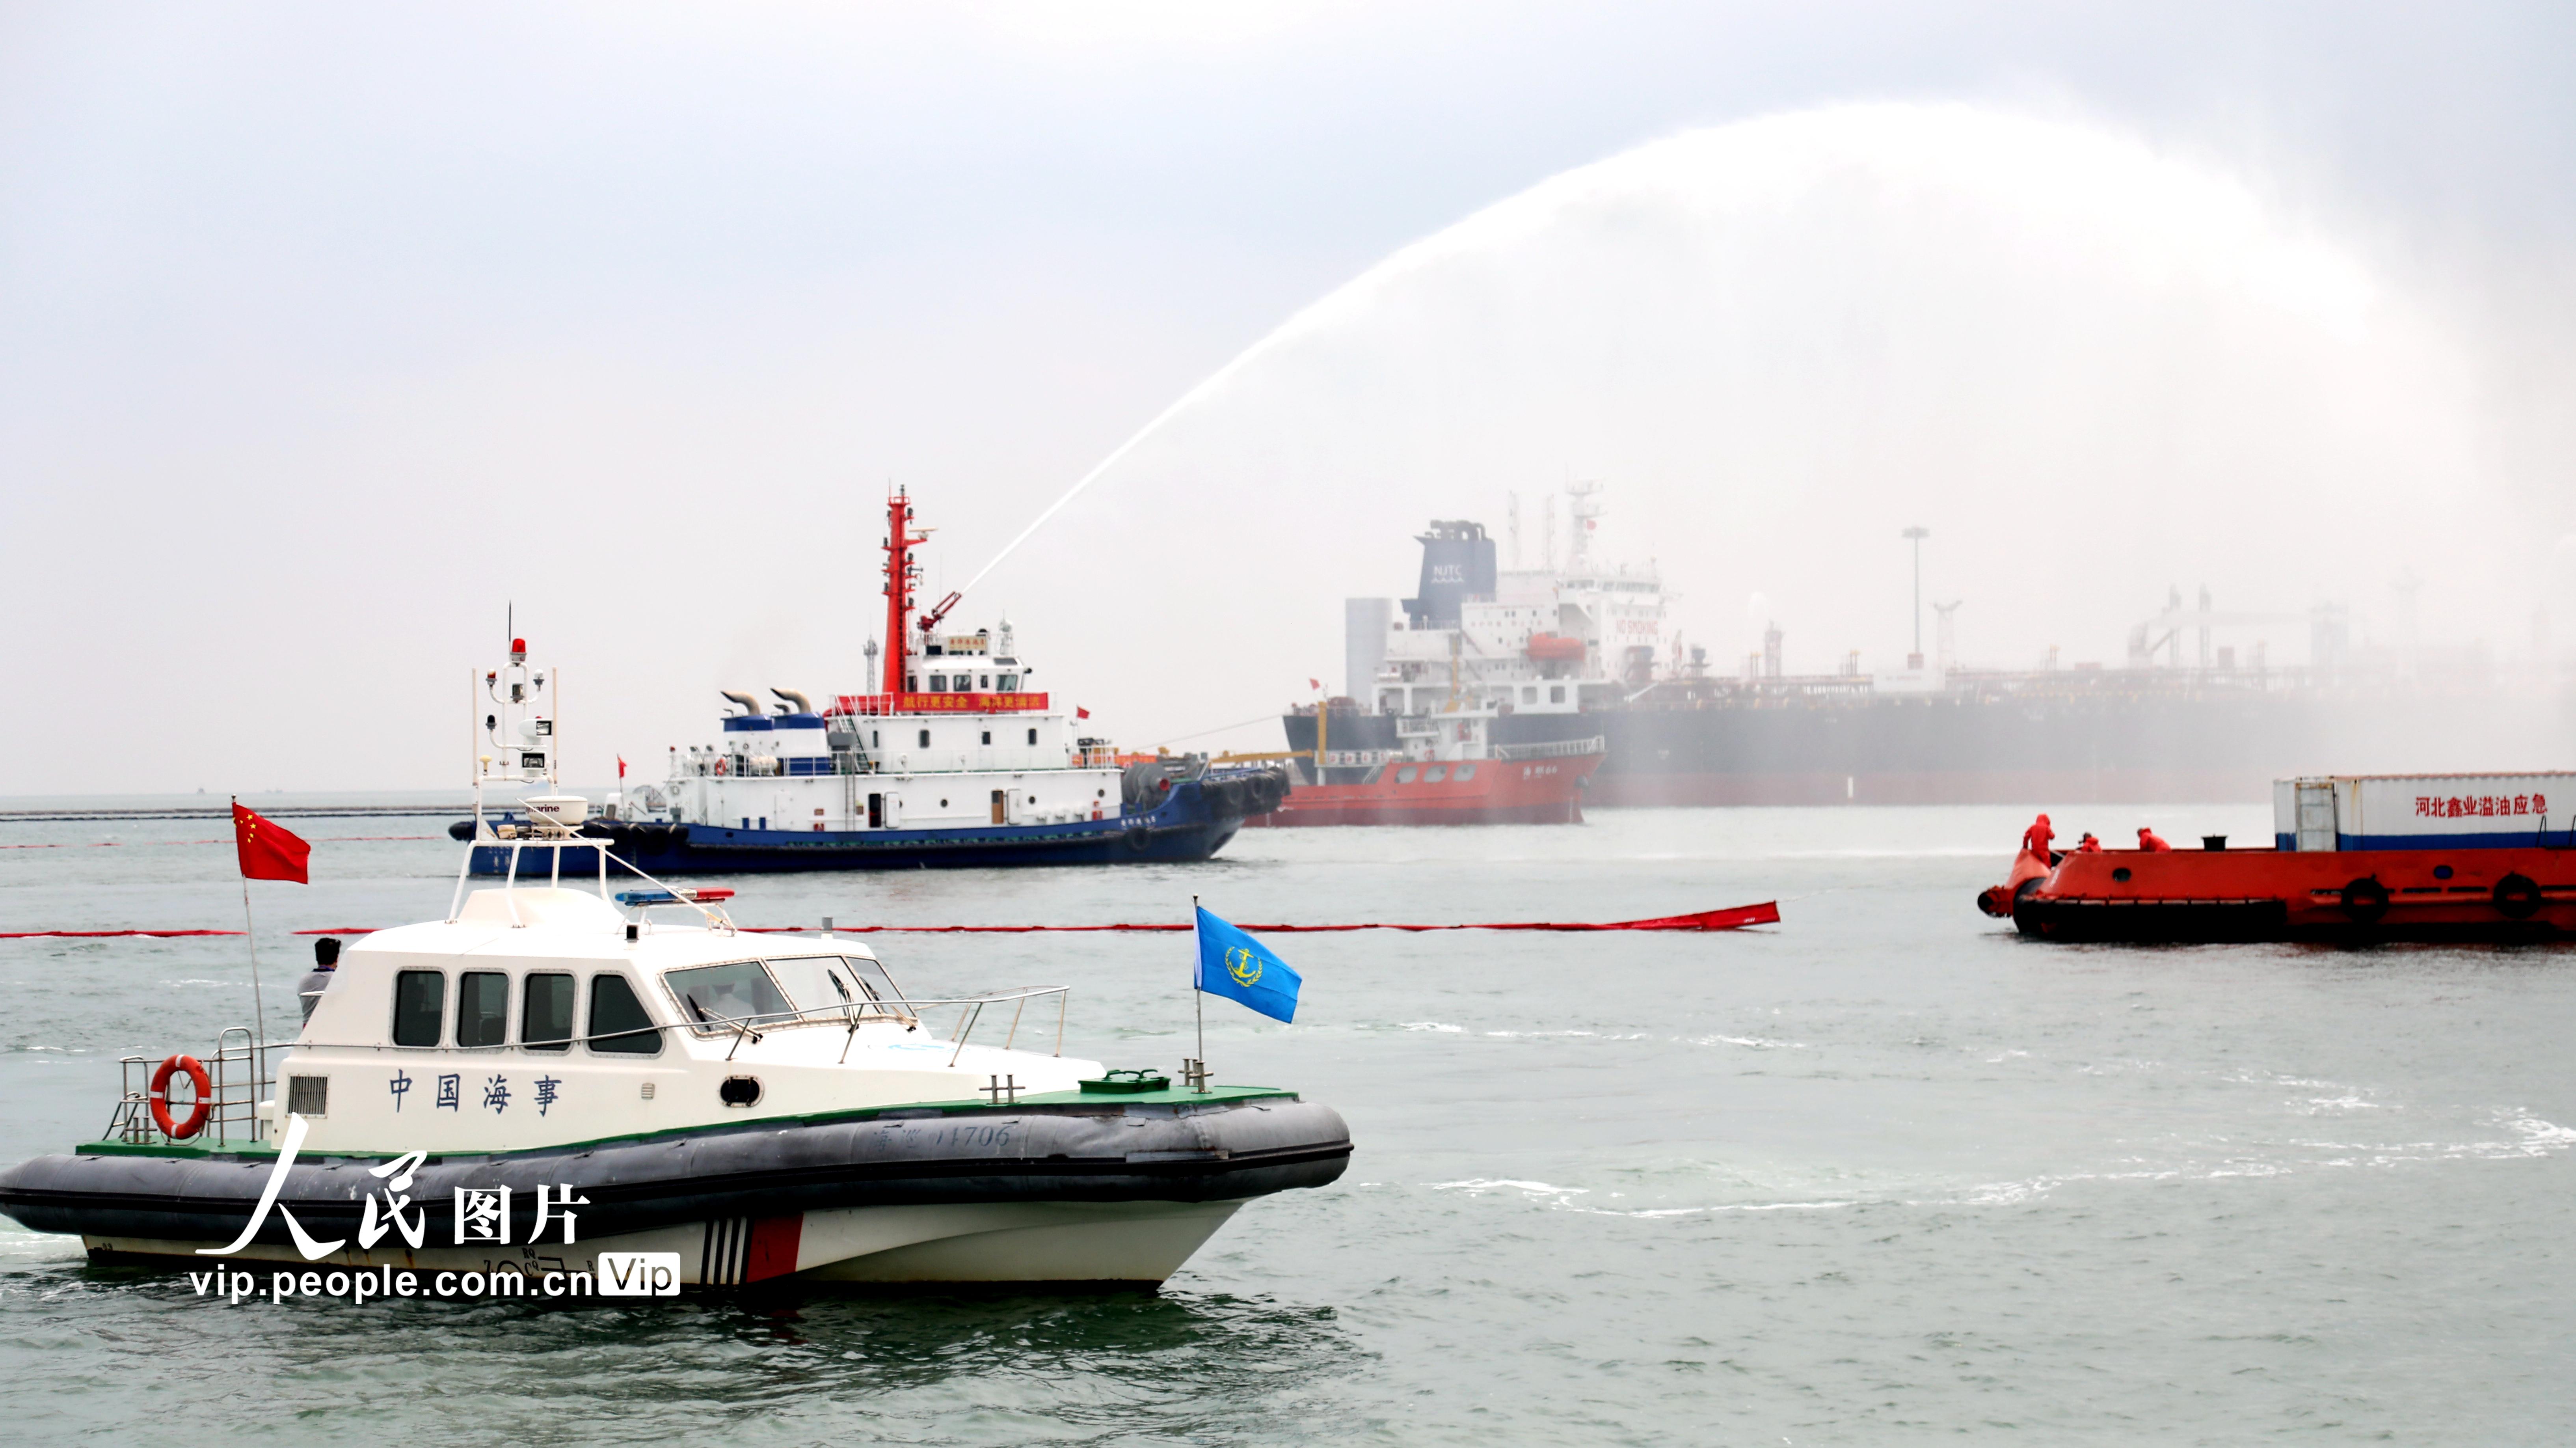 2020年河北海域舉行船載危險化學品污染事故應急演習